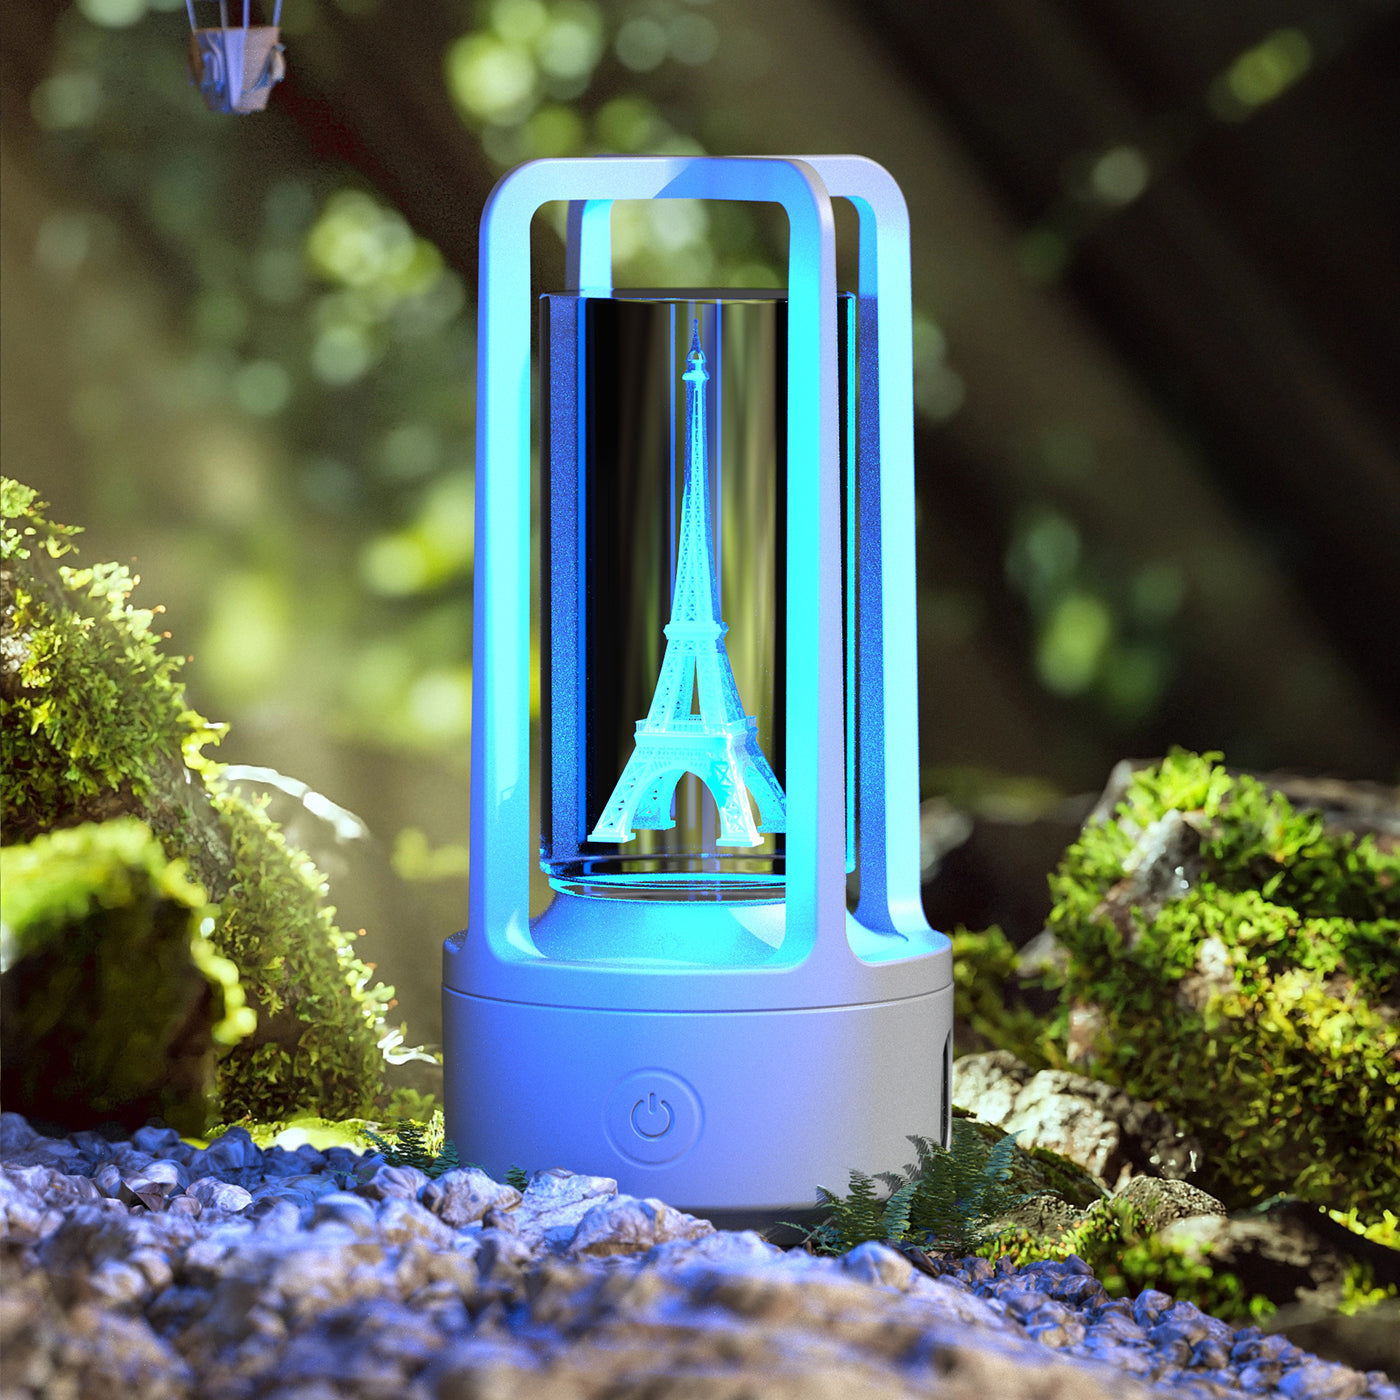 HOOR Lamp Bluetooth Speaker White Crystal Tower